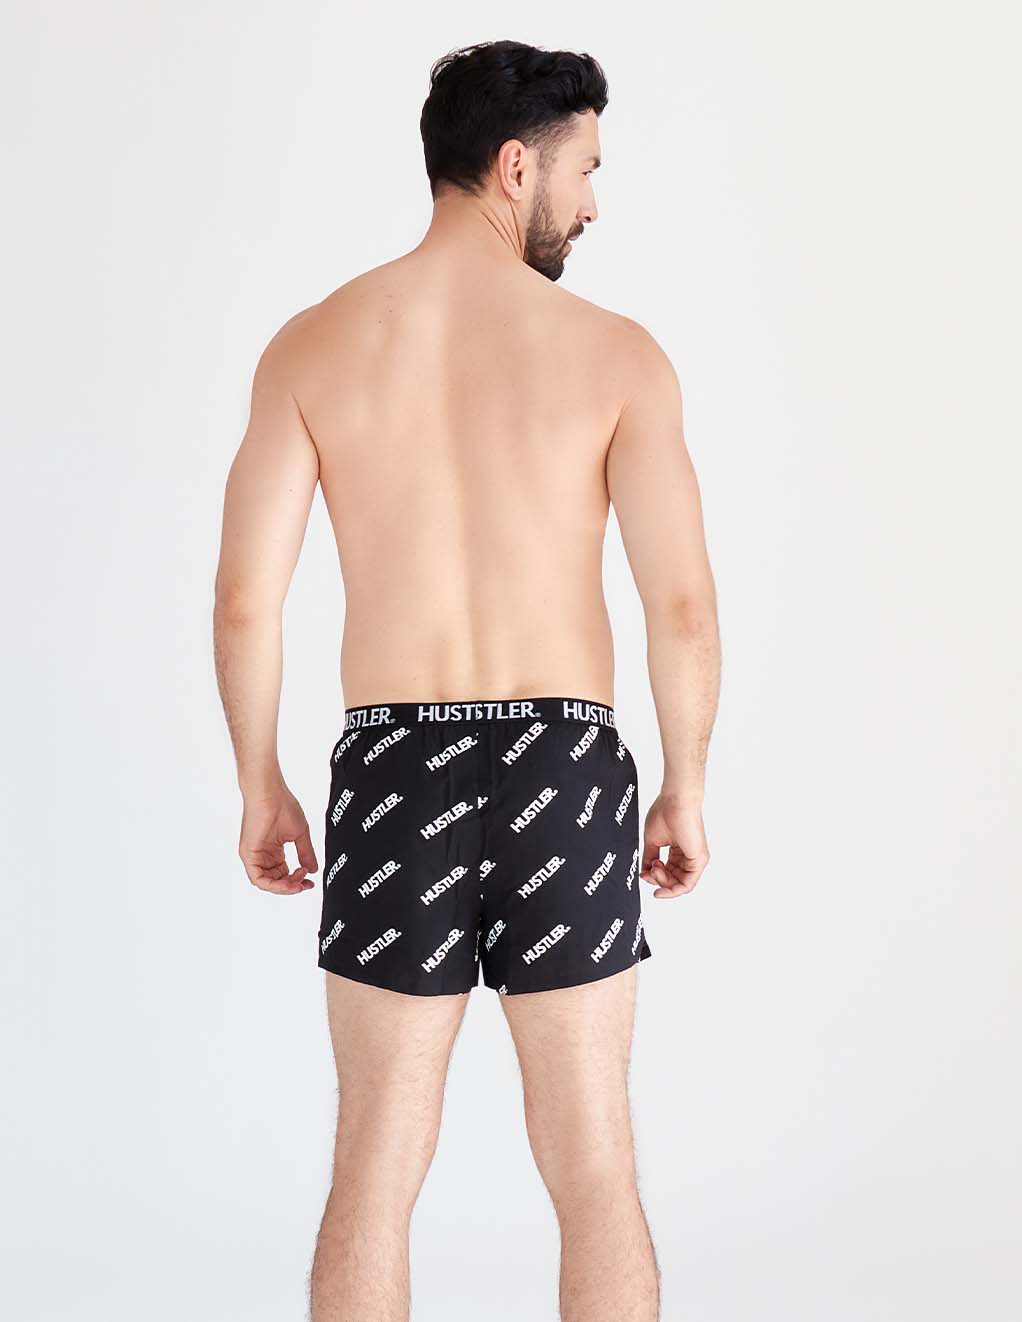 HUSTLER® Mens Boxer Shorts- Black/ White- Back